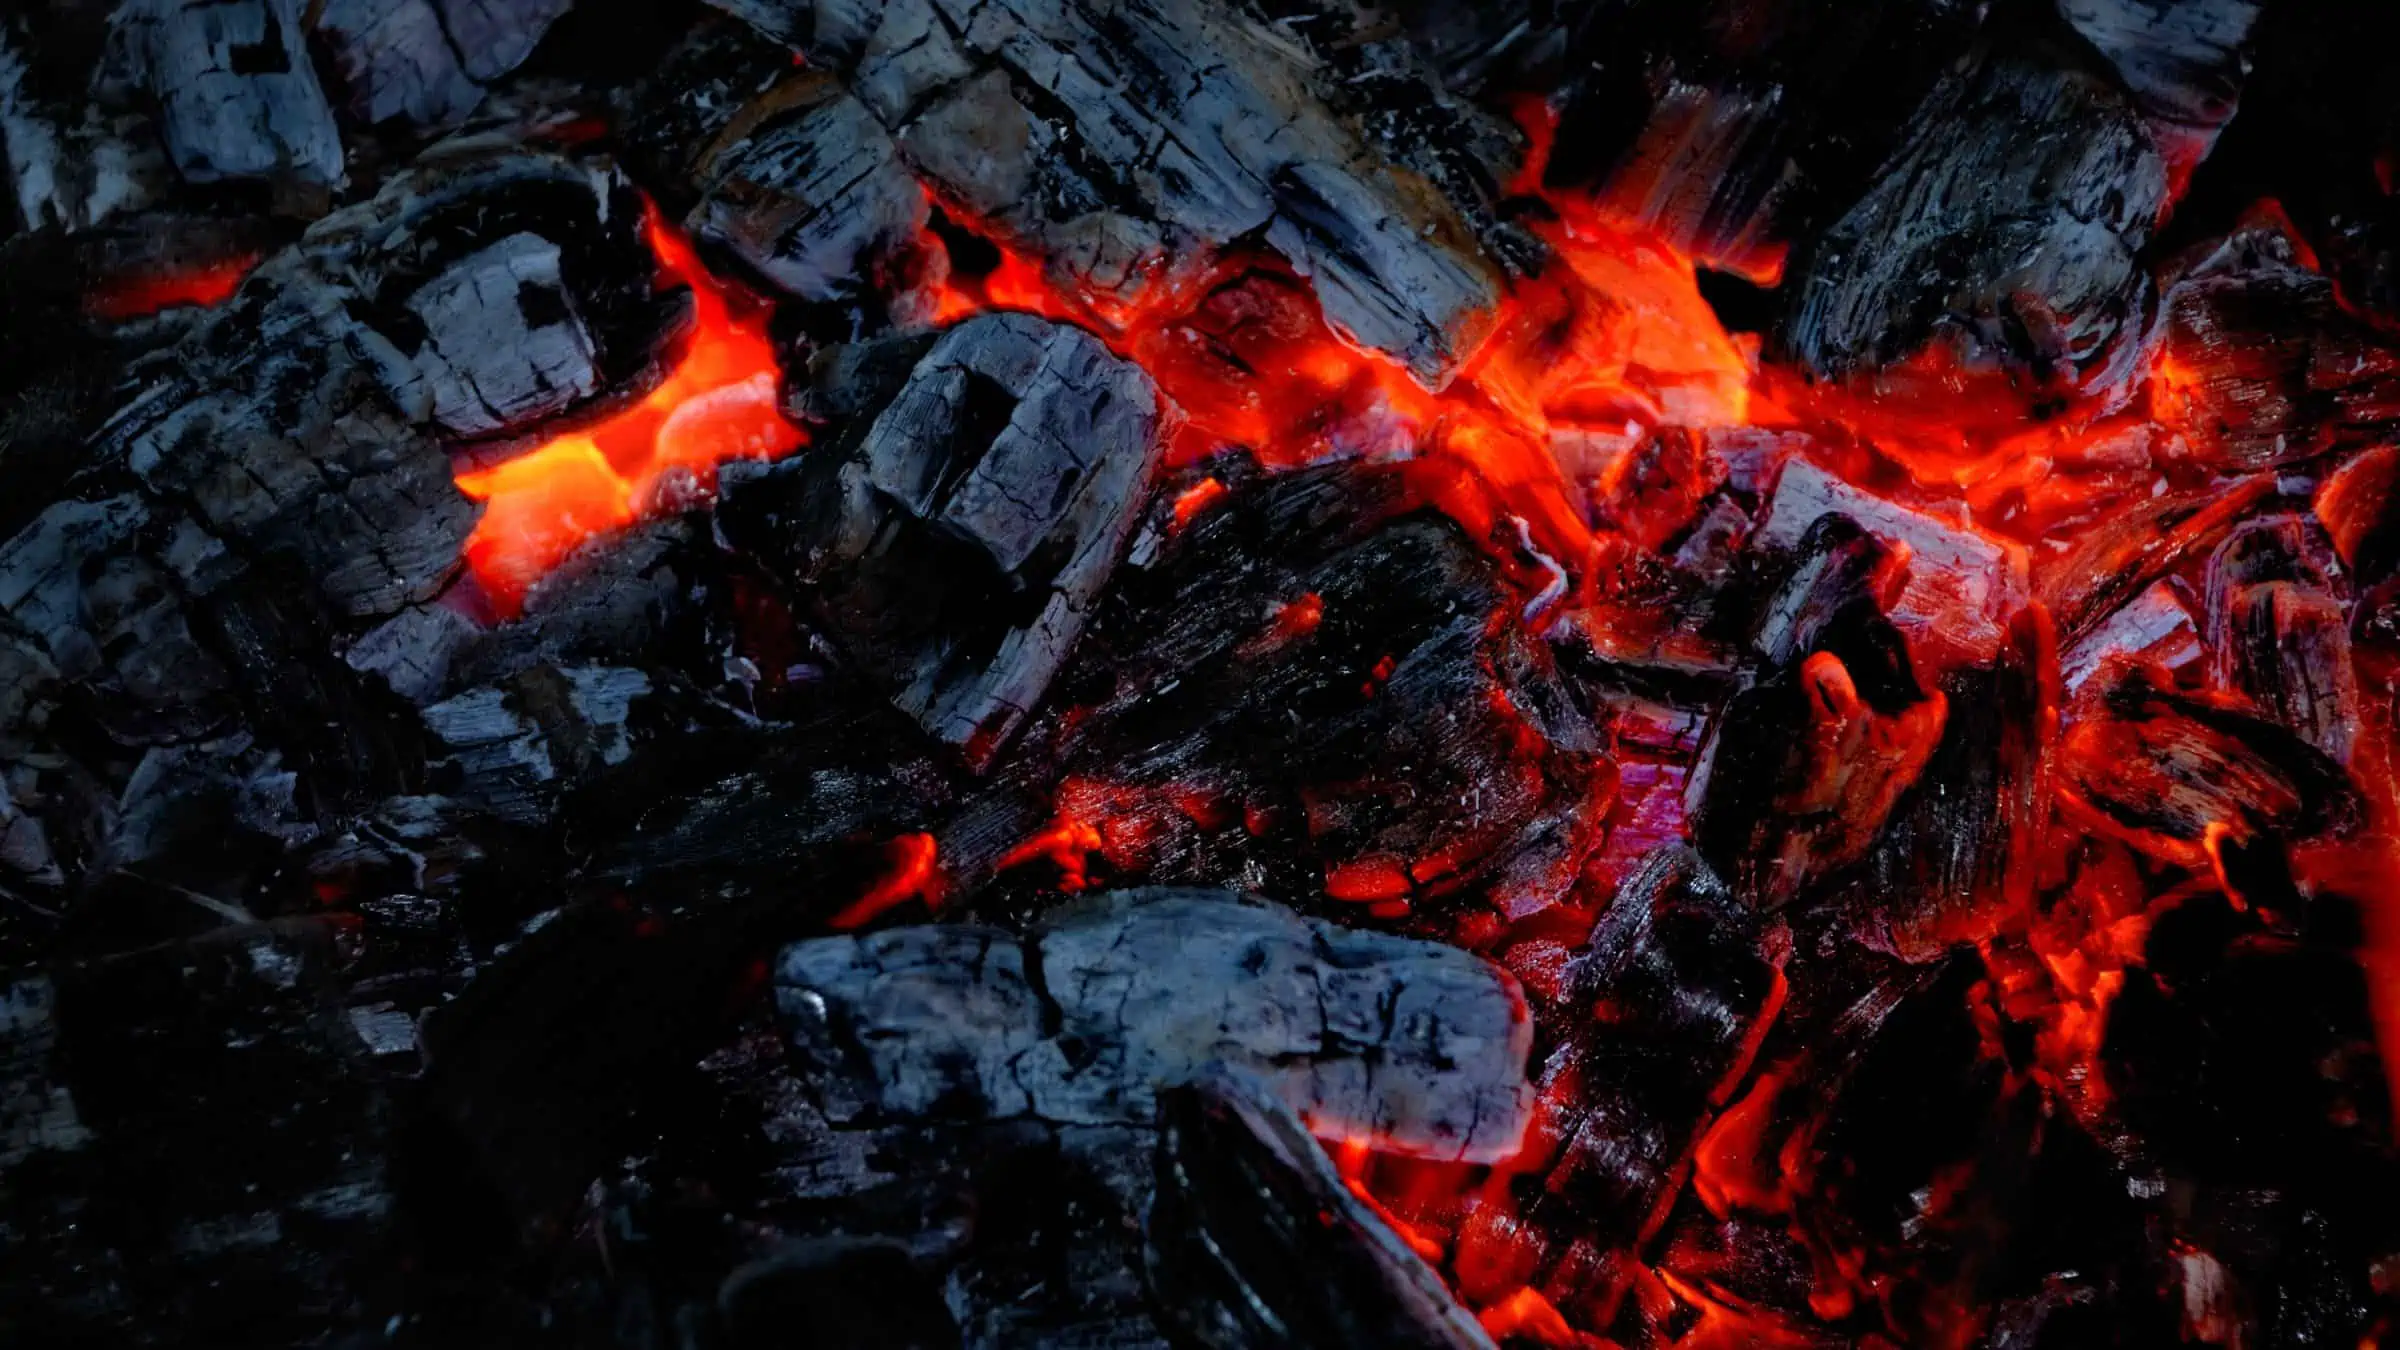 Red hot wood coals